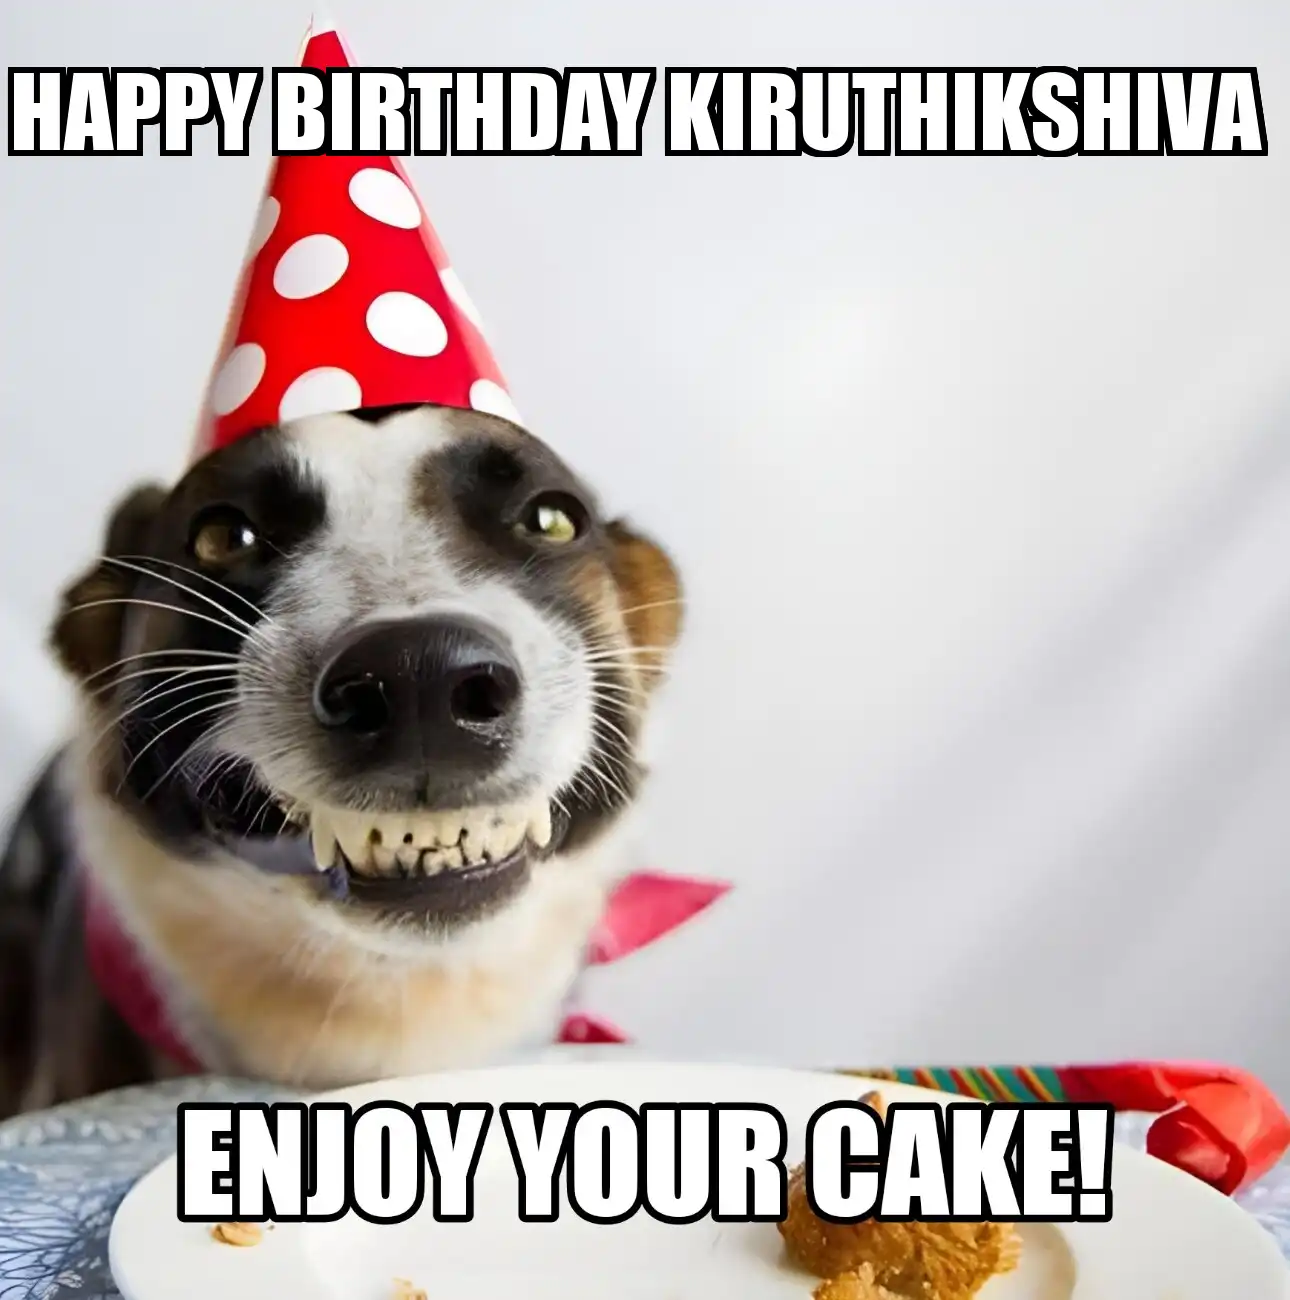 Happy Birthday Kiruthikshiva Enjoy Your Cake Dog Meme